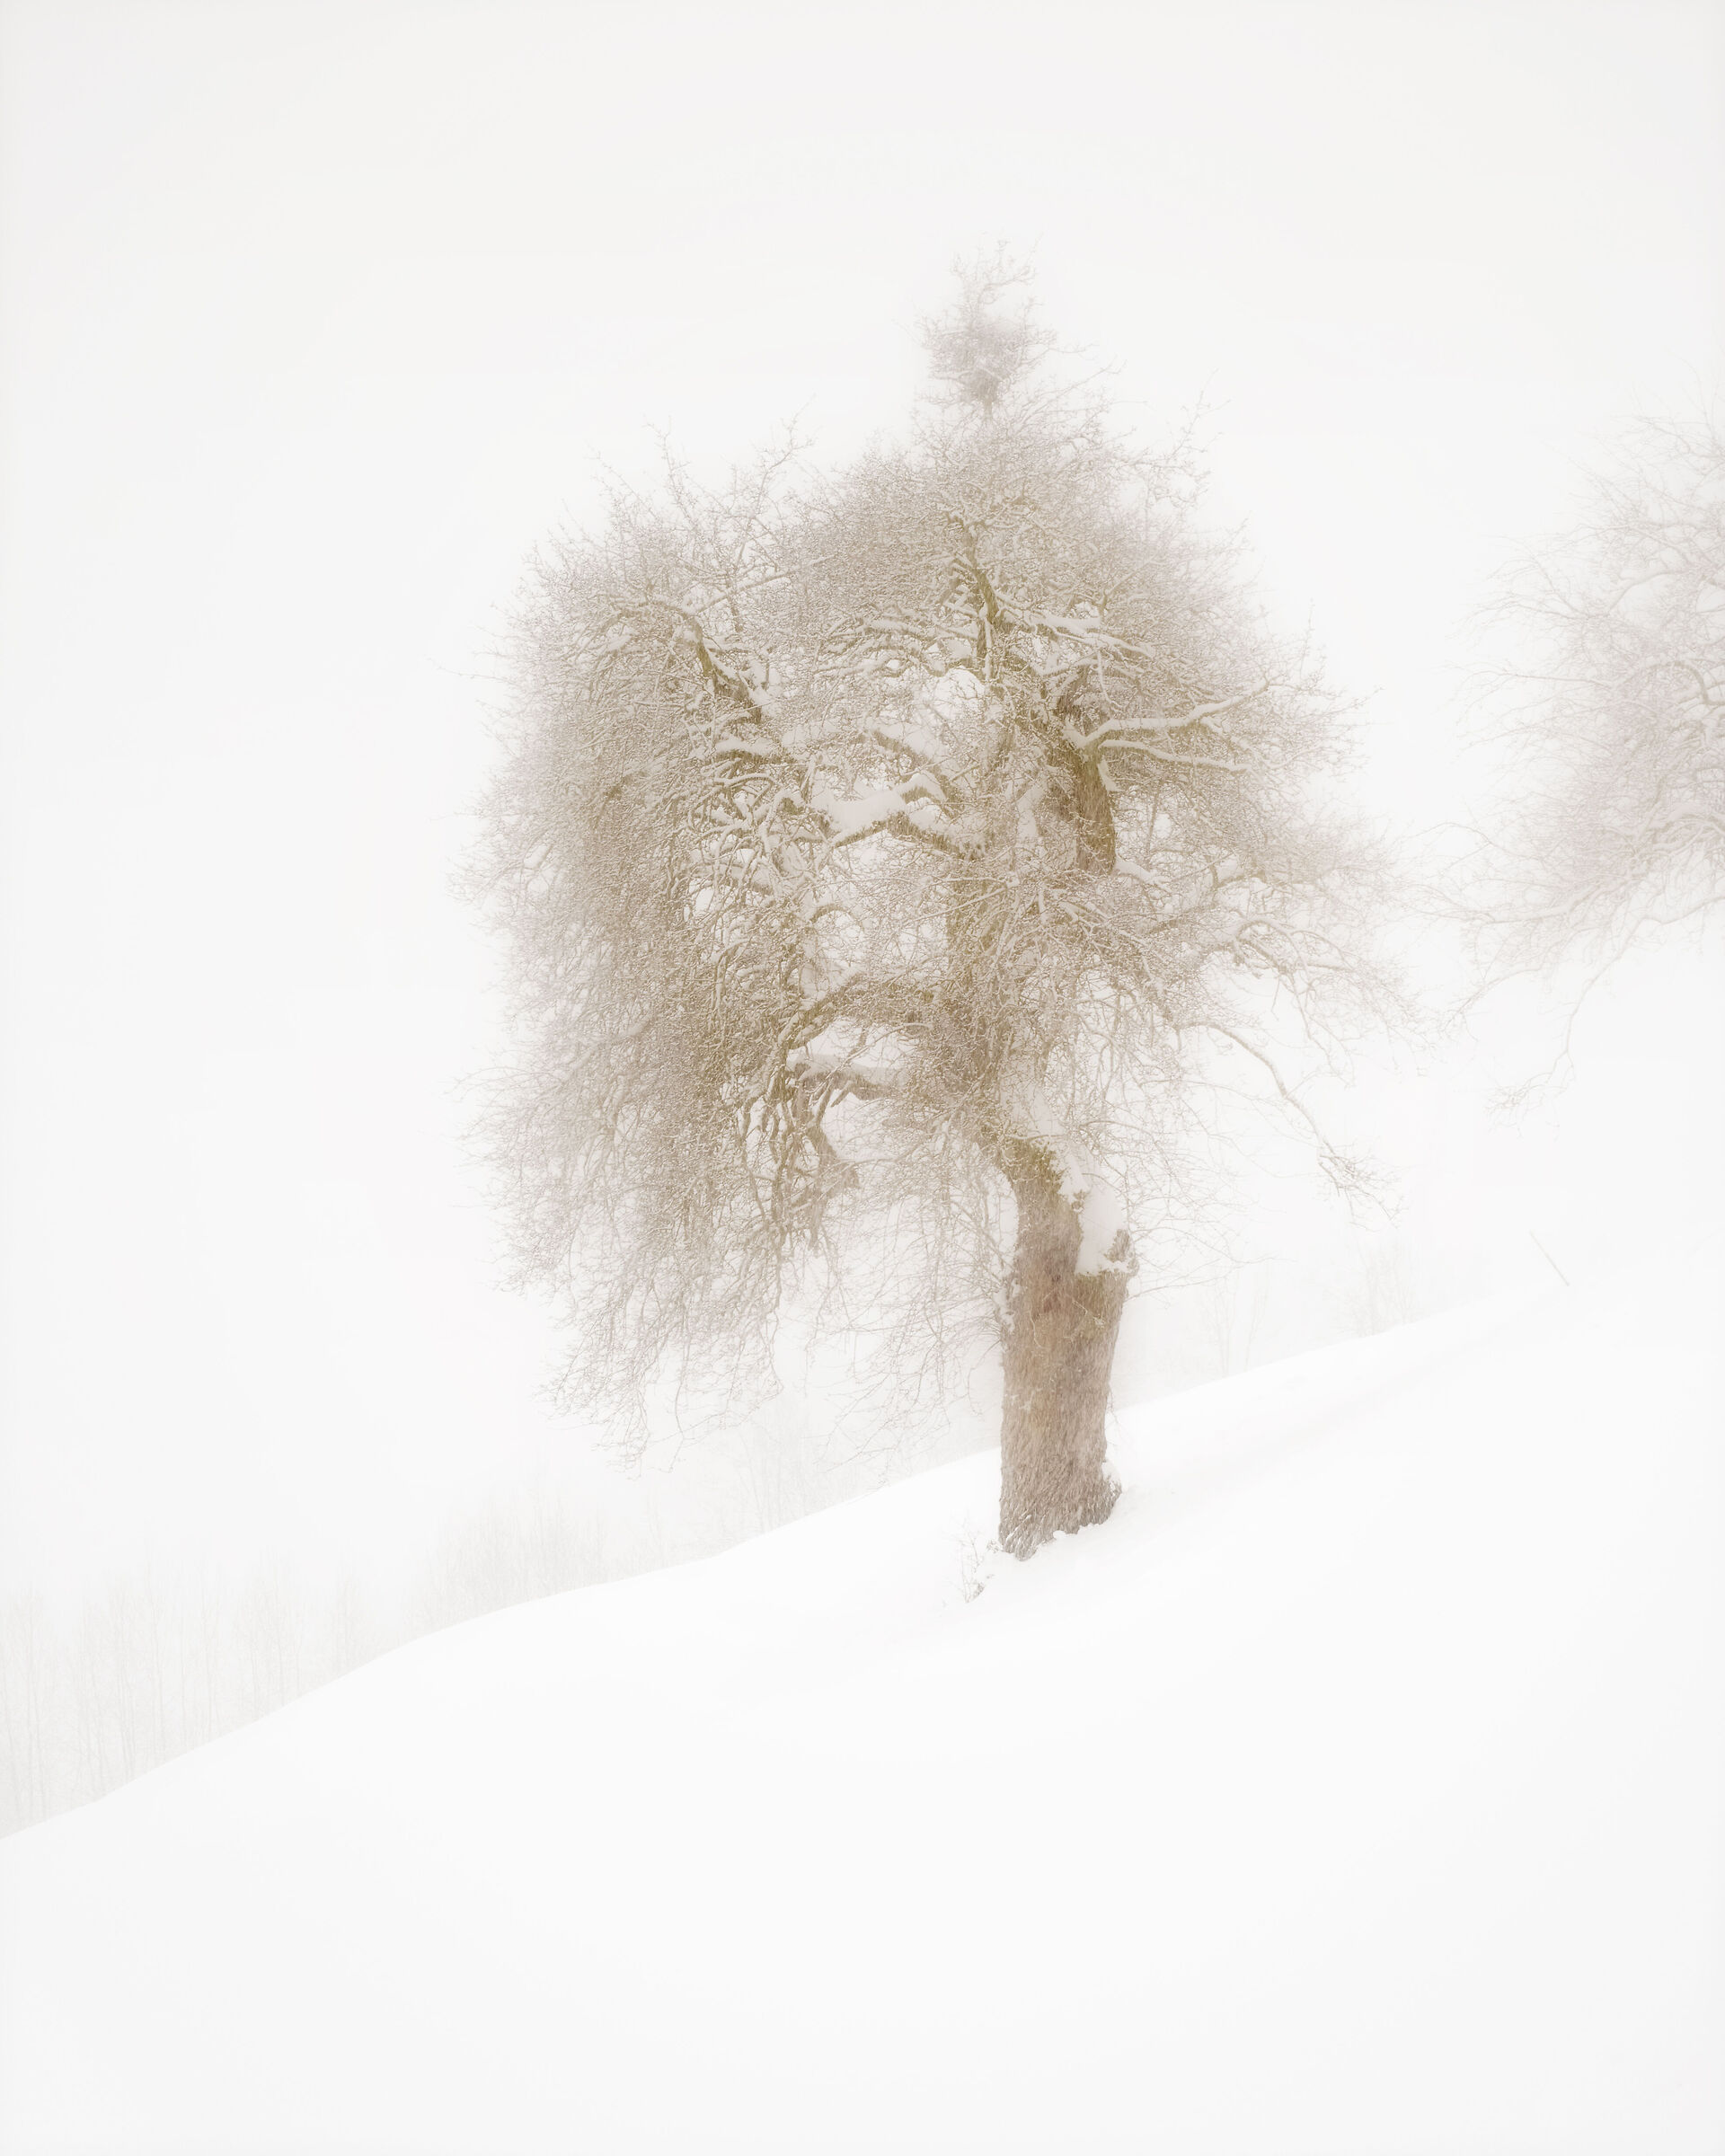 albero sotto la nevicata in Val di Funes...